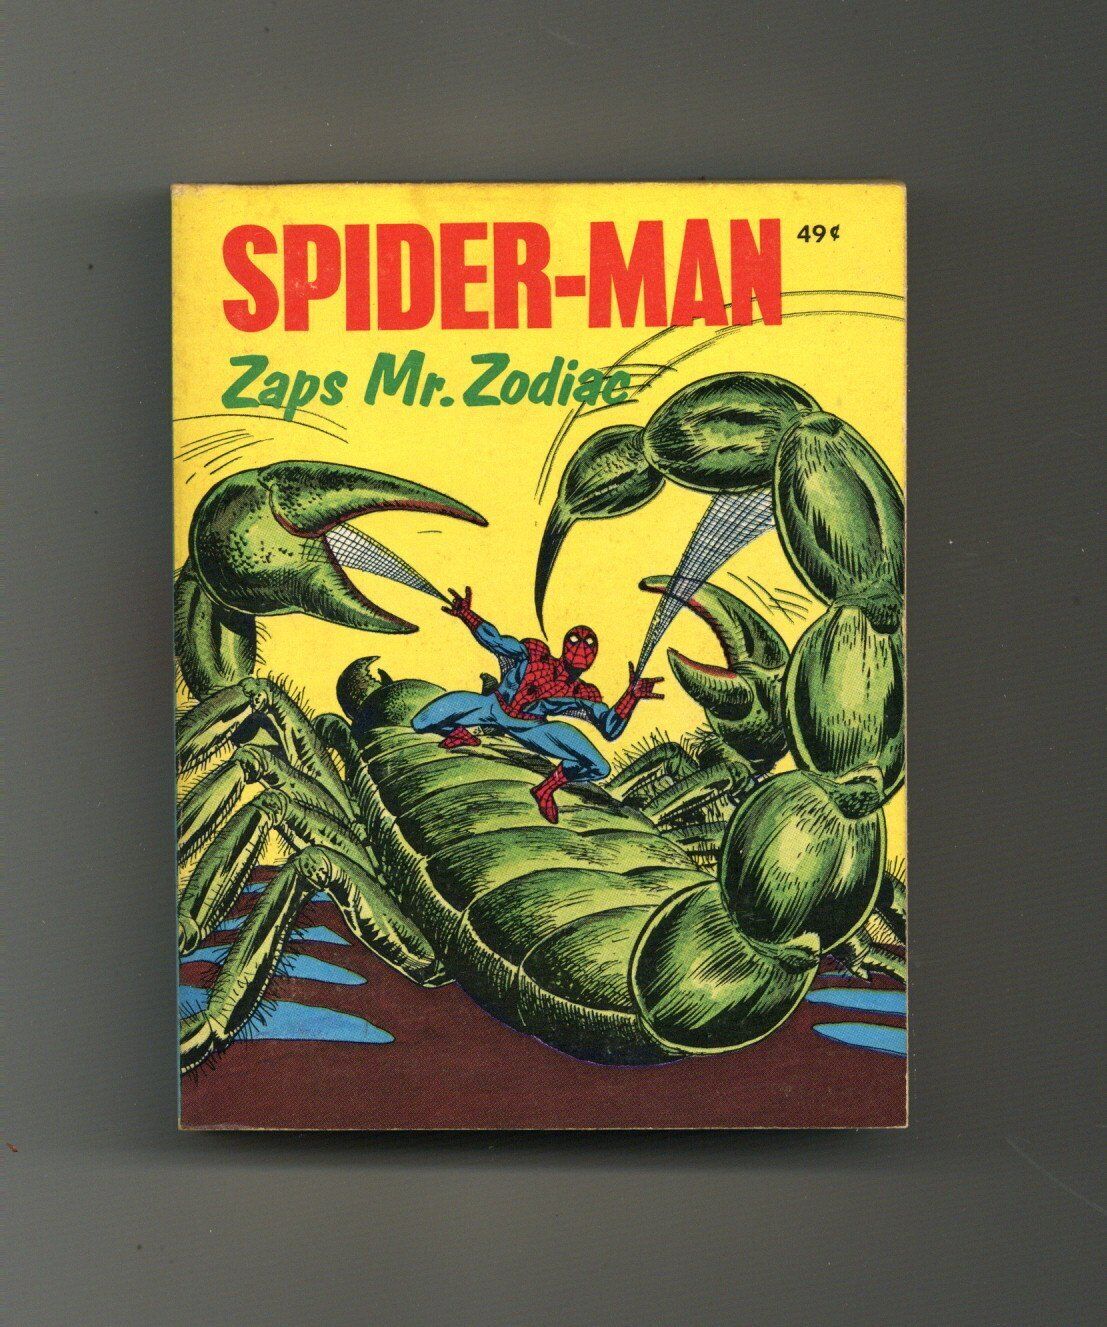 Spider-Man Zaps Mr Zodiac #5779 FN 1976